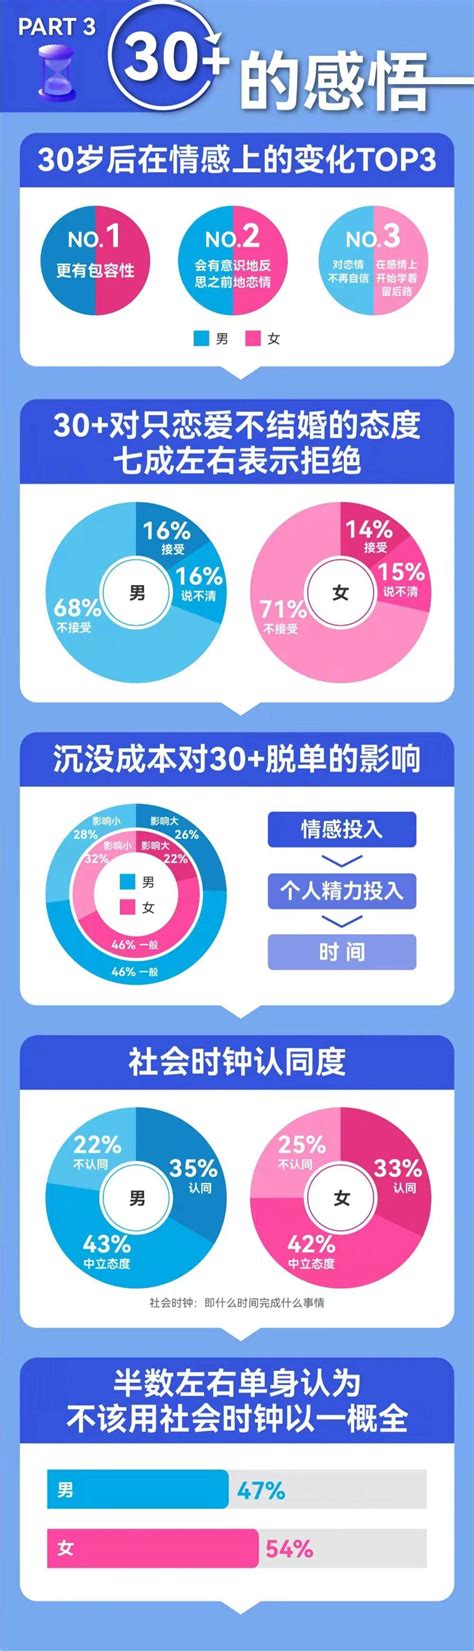 2021-2022中国男女婚恋观报告-百合&世纪佳缘_pdf_单身_人群